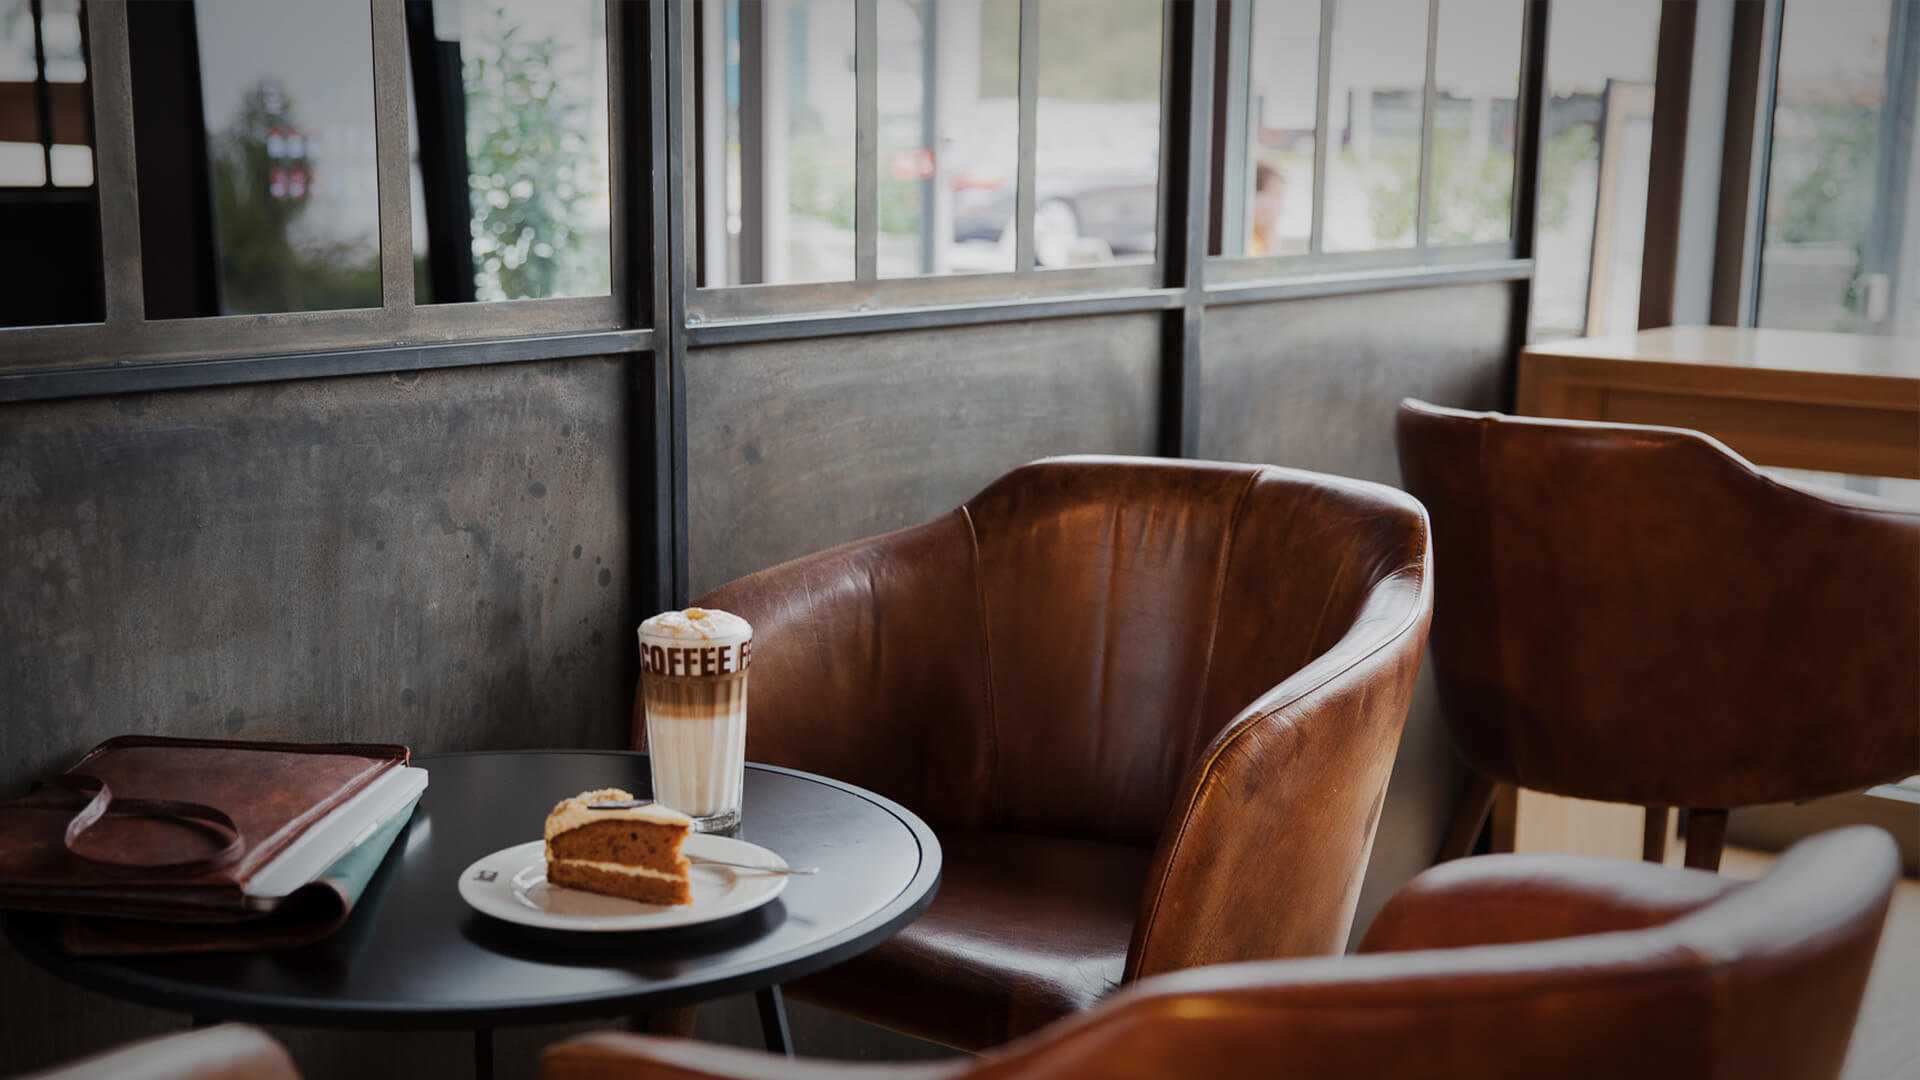 Sitzgelegenheit in einem Coffee Shop, ein Stück Kuchen und ein Latte Macchiato auf dem Tisch